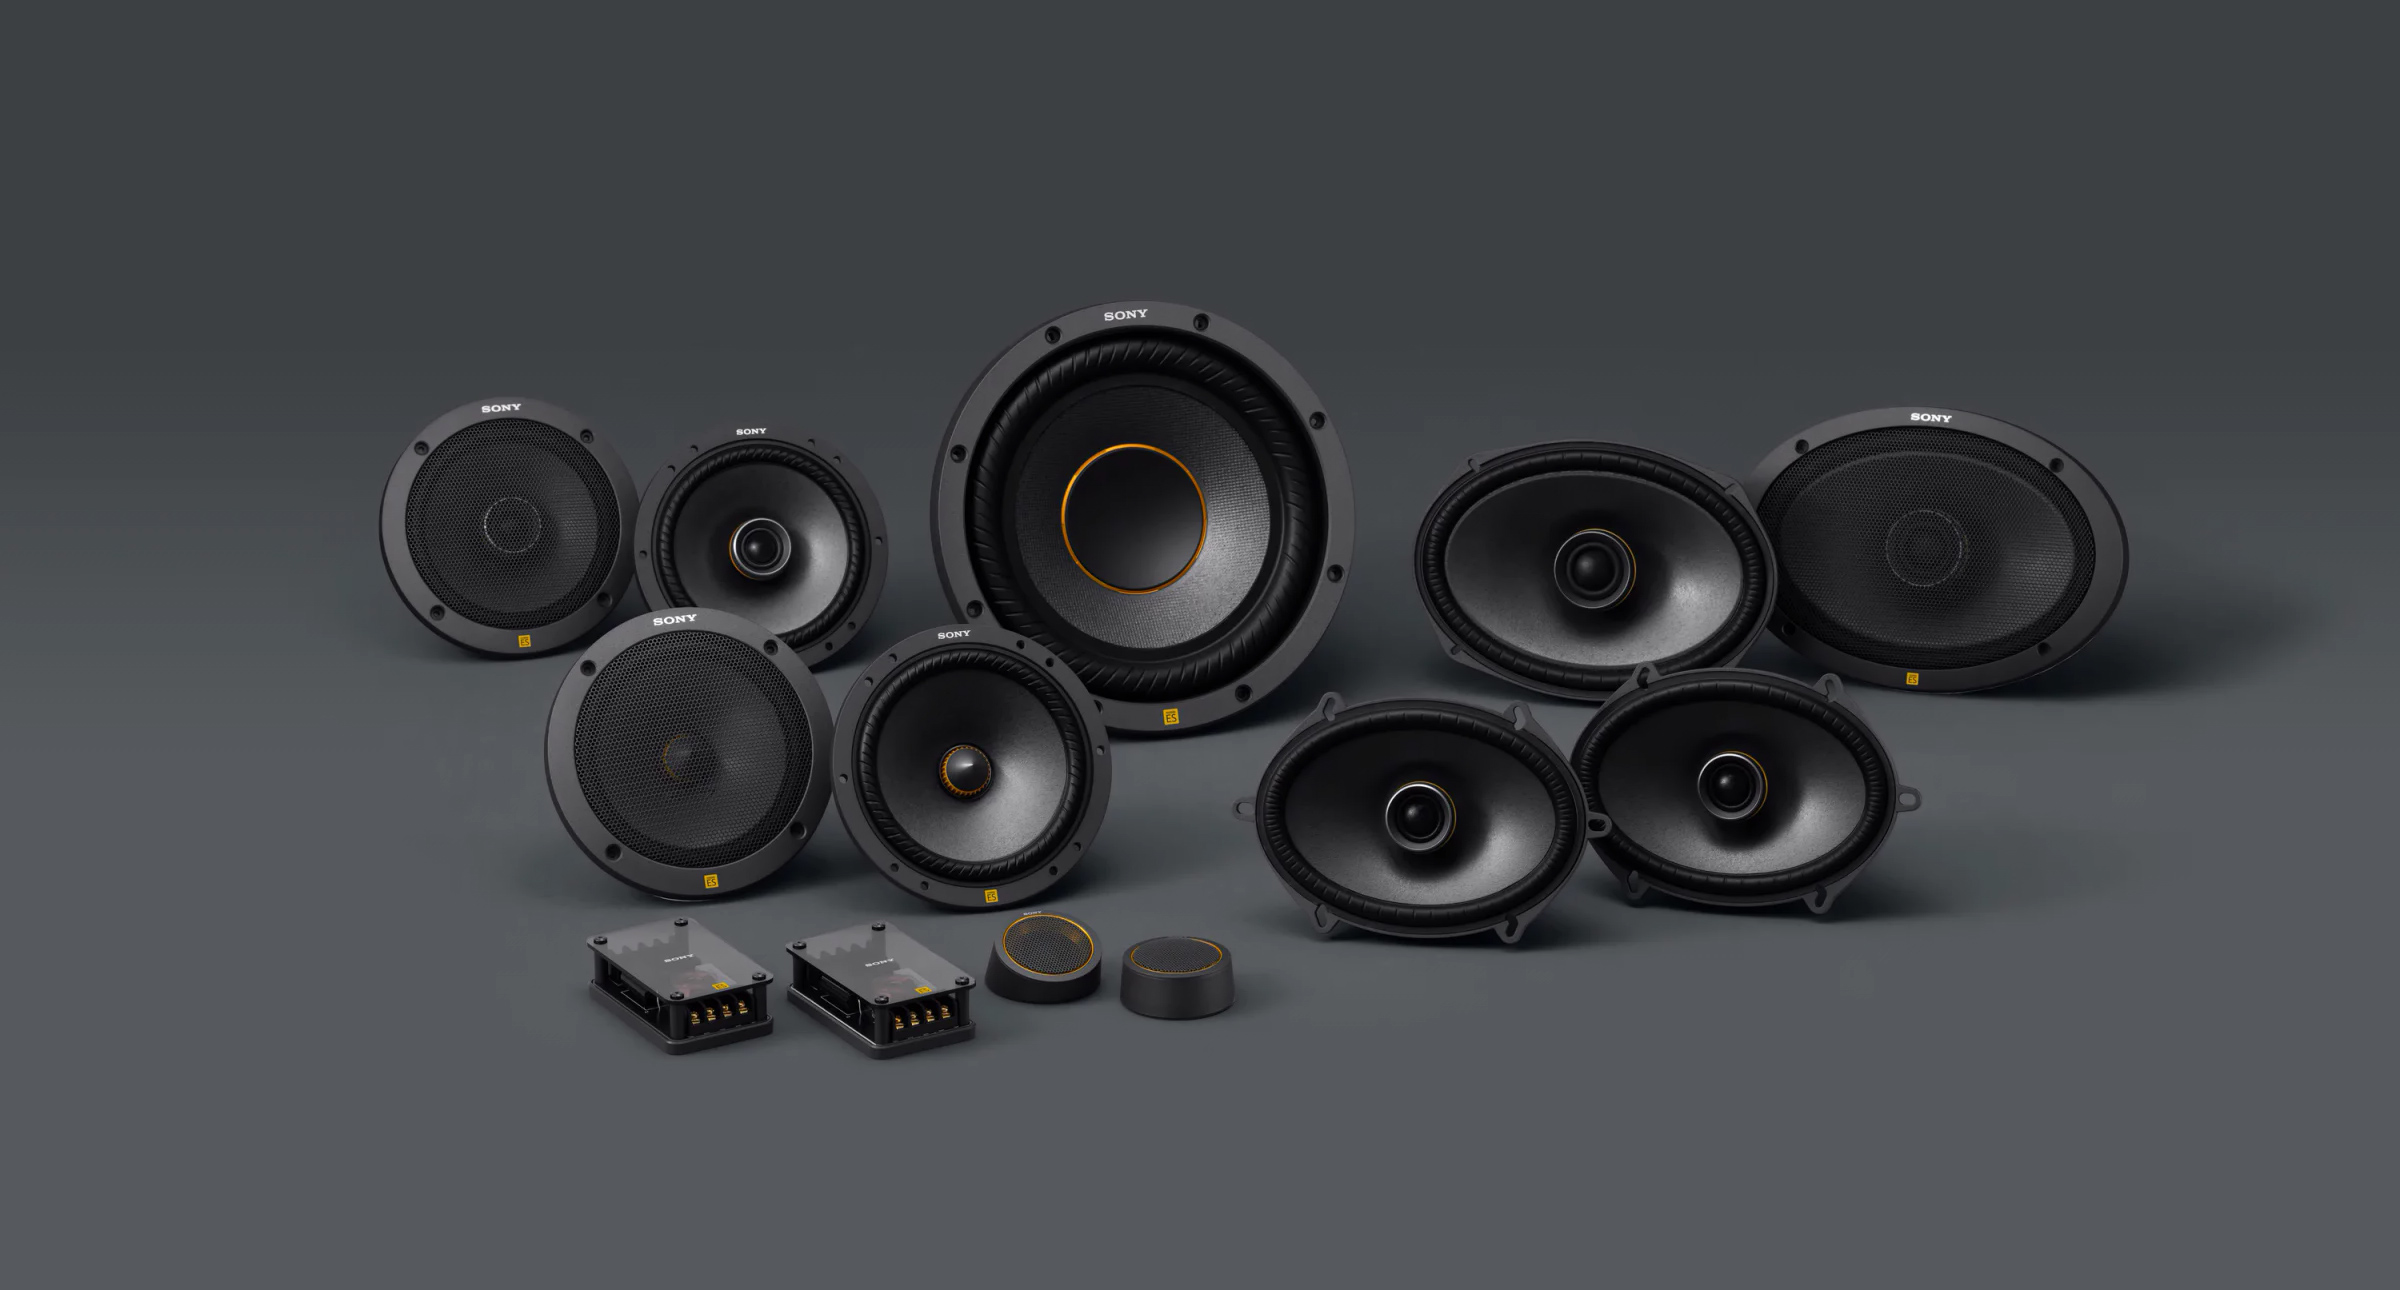 Sony prezentuje nowe głośniki samochodowe Mobile ES – świetna jakość dźwięku i najnowsze technologie